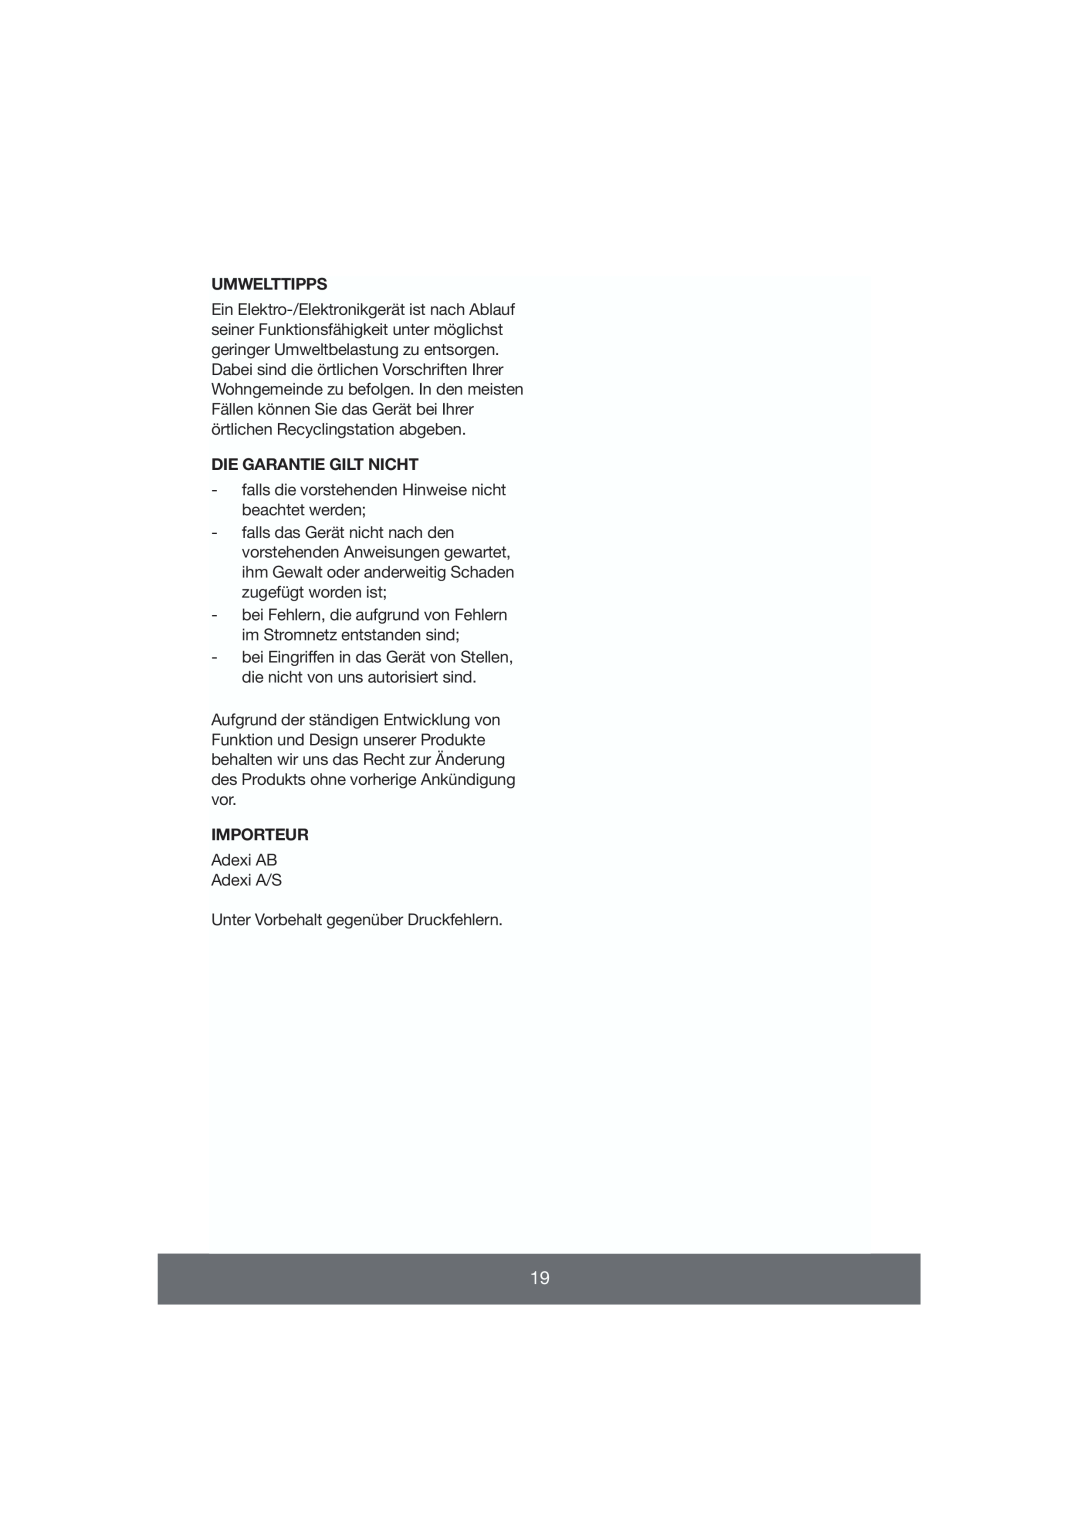 Butler 645-056 manual Umwelttipps, Die Garantie Gilt Nicht, Importeur 